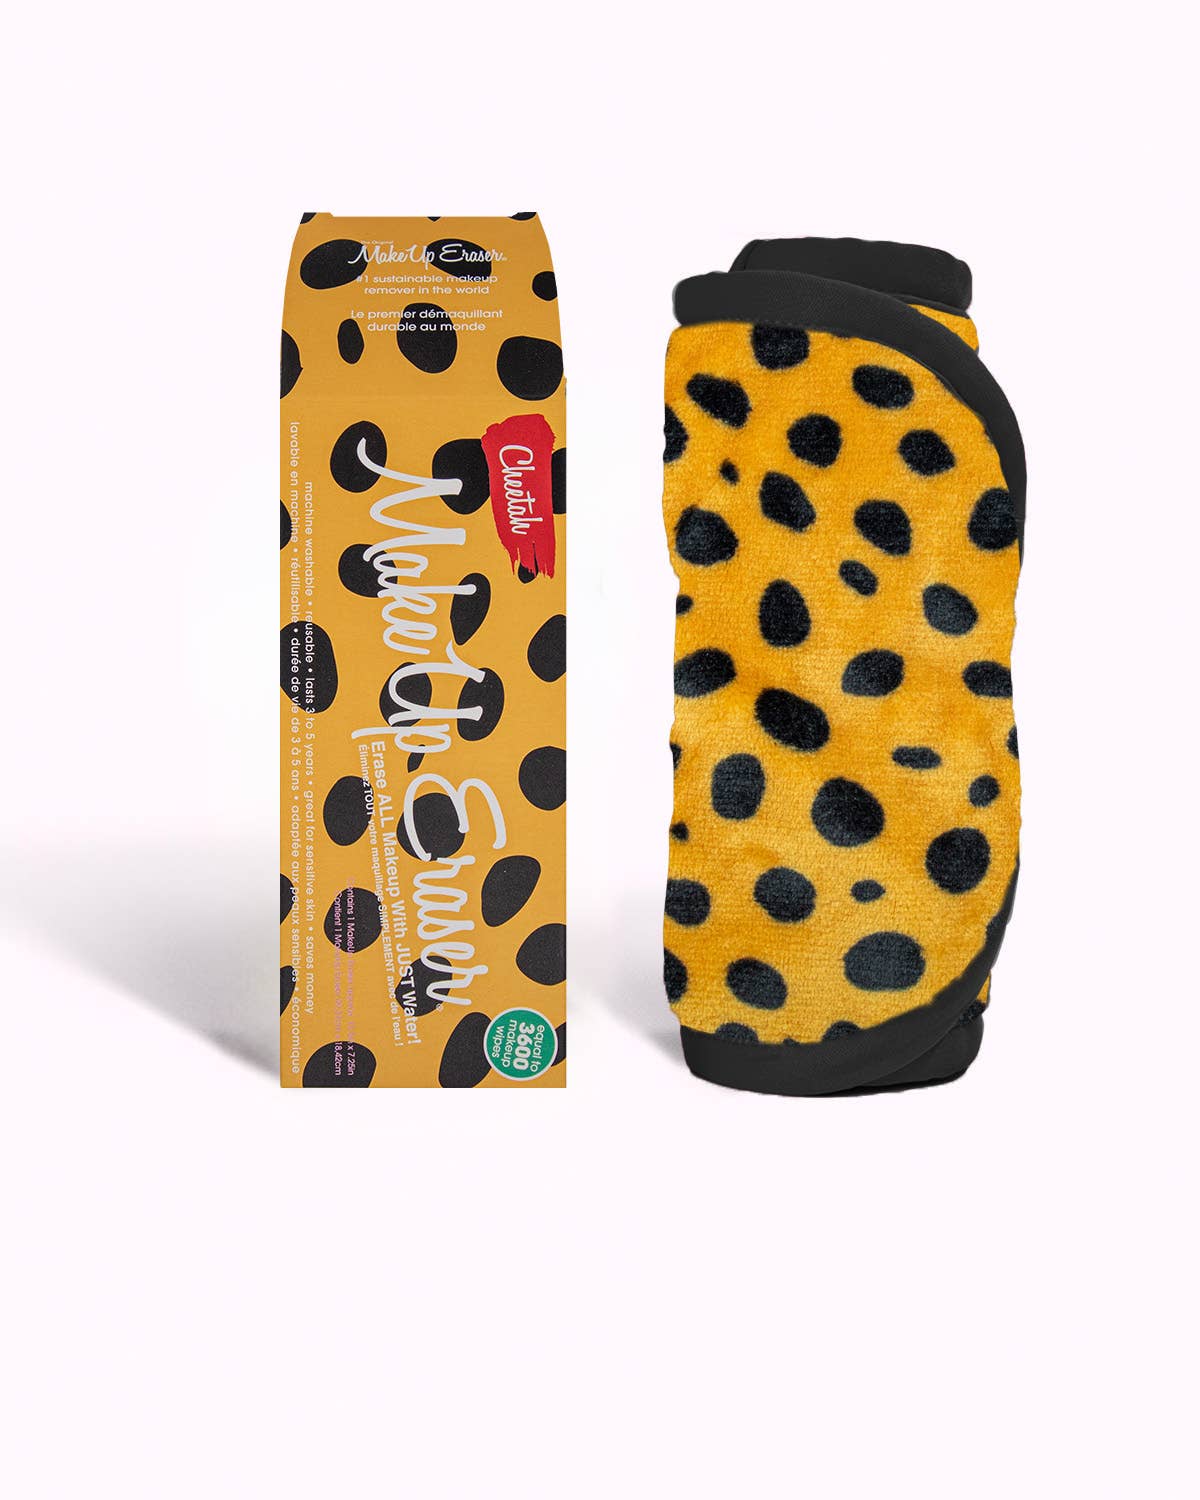 Cheetah Print MakeUp Eraser